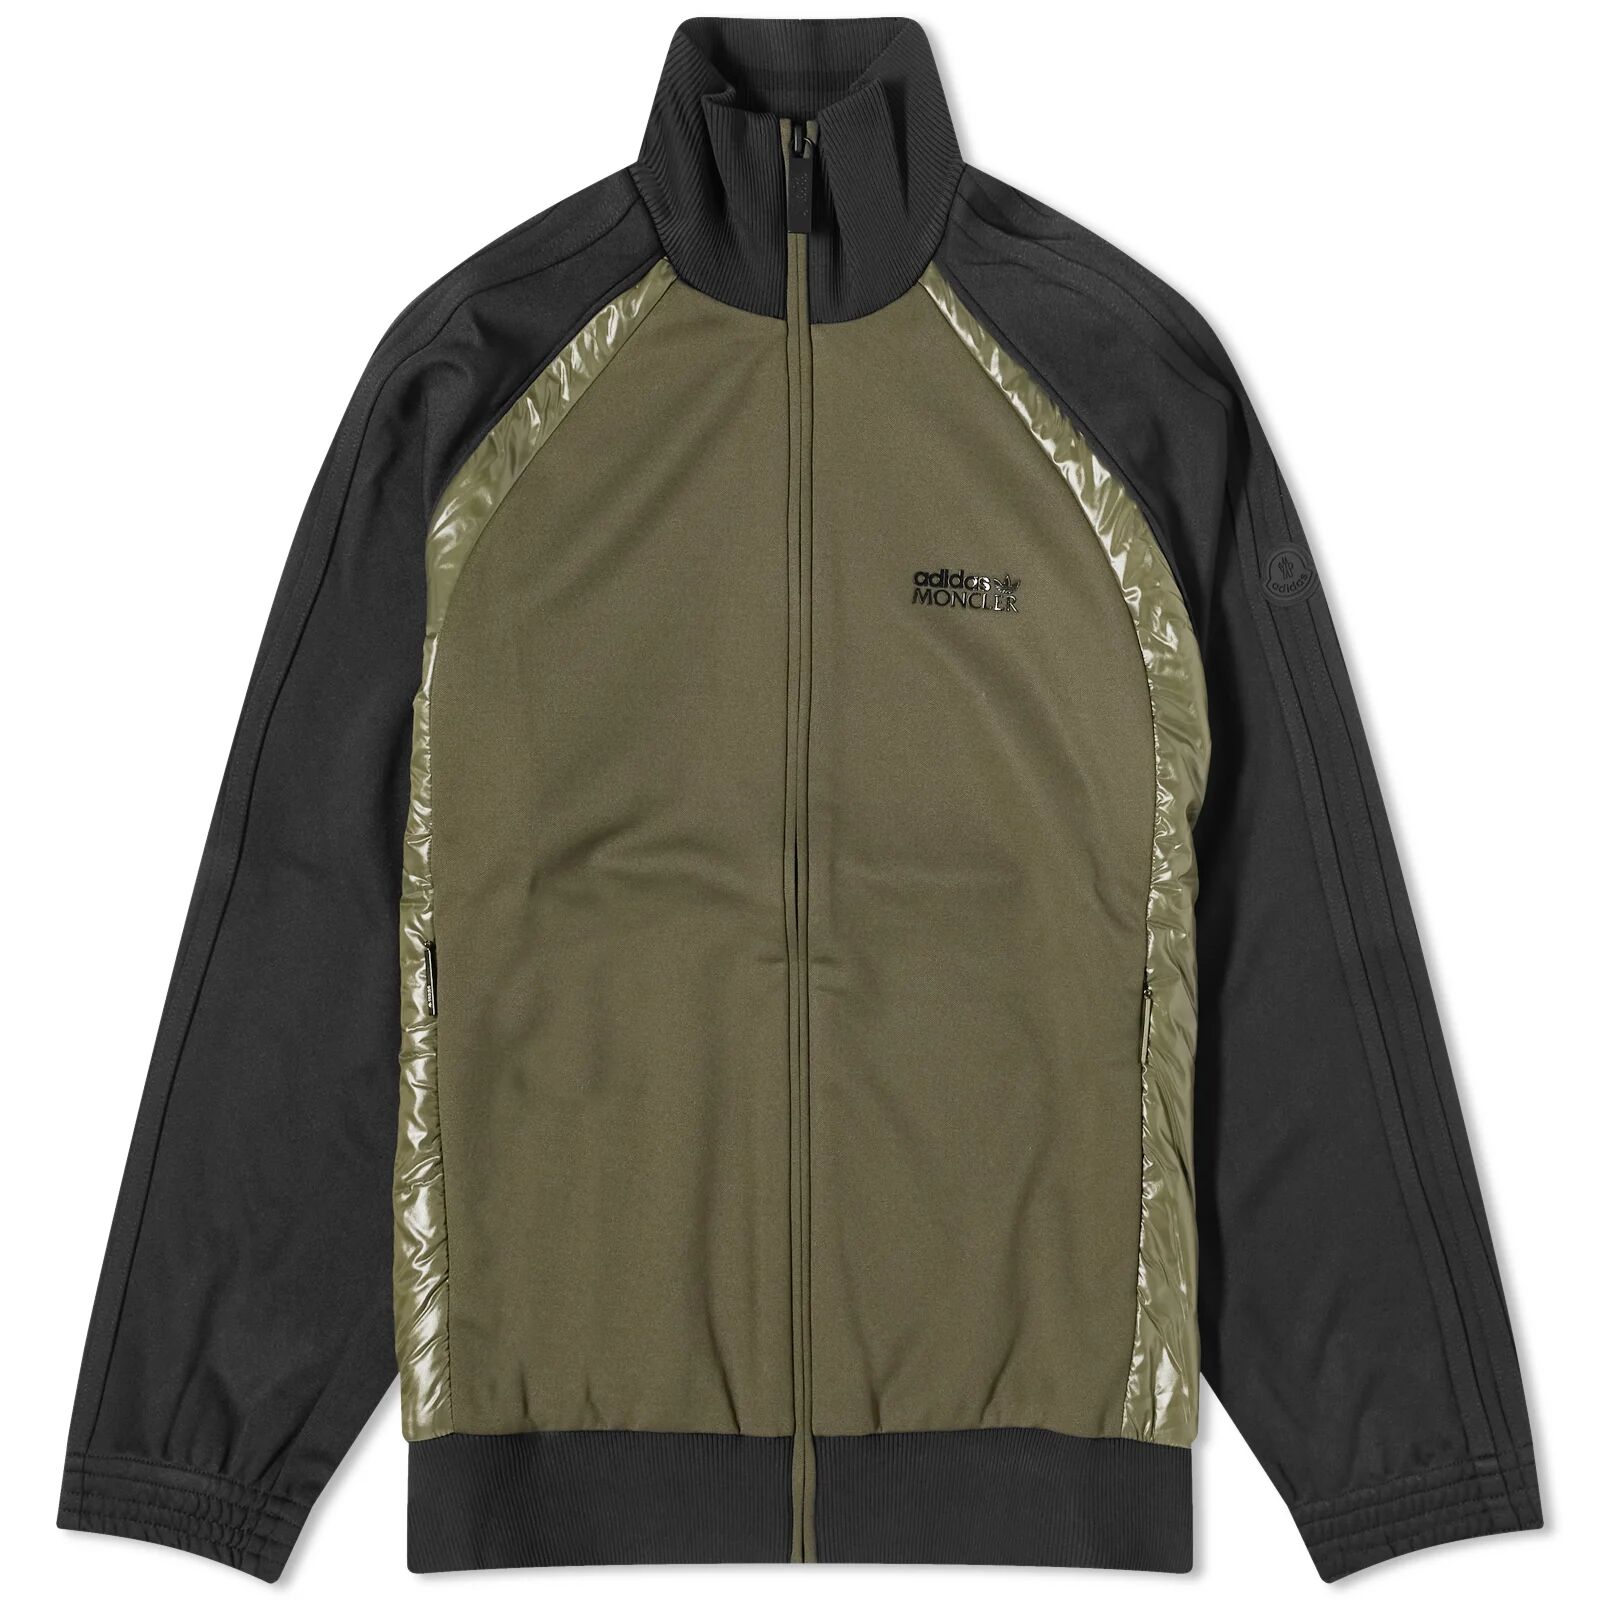 Moncler Men's x adidas Originals Zip Up Knit Track Jacket in Black/Olive, Size Large